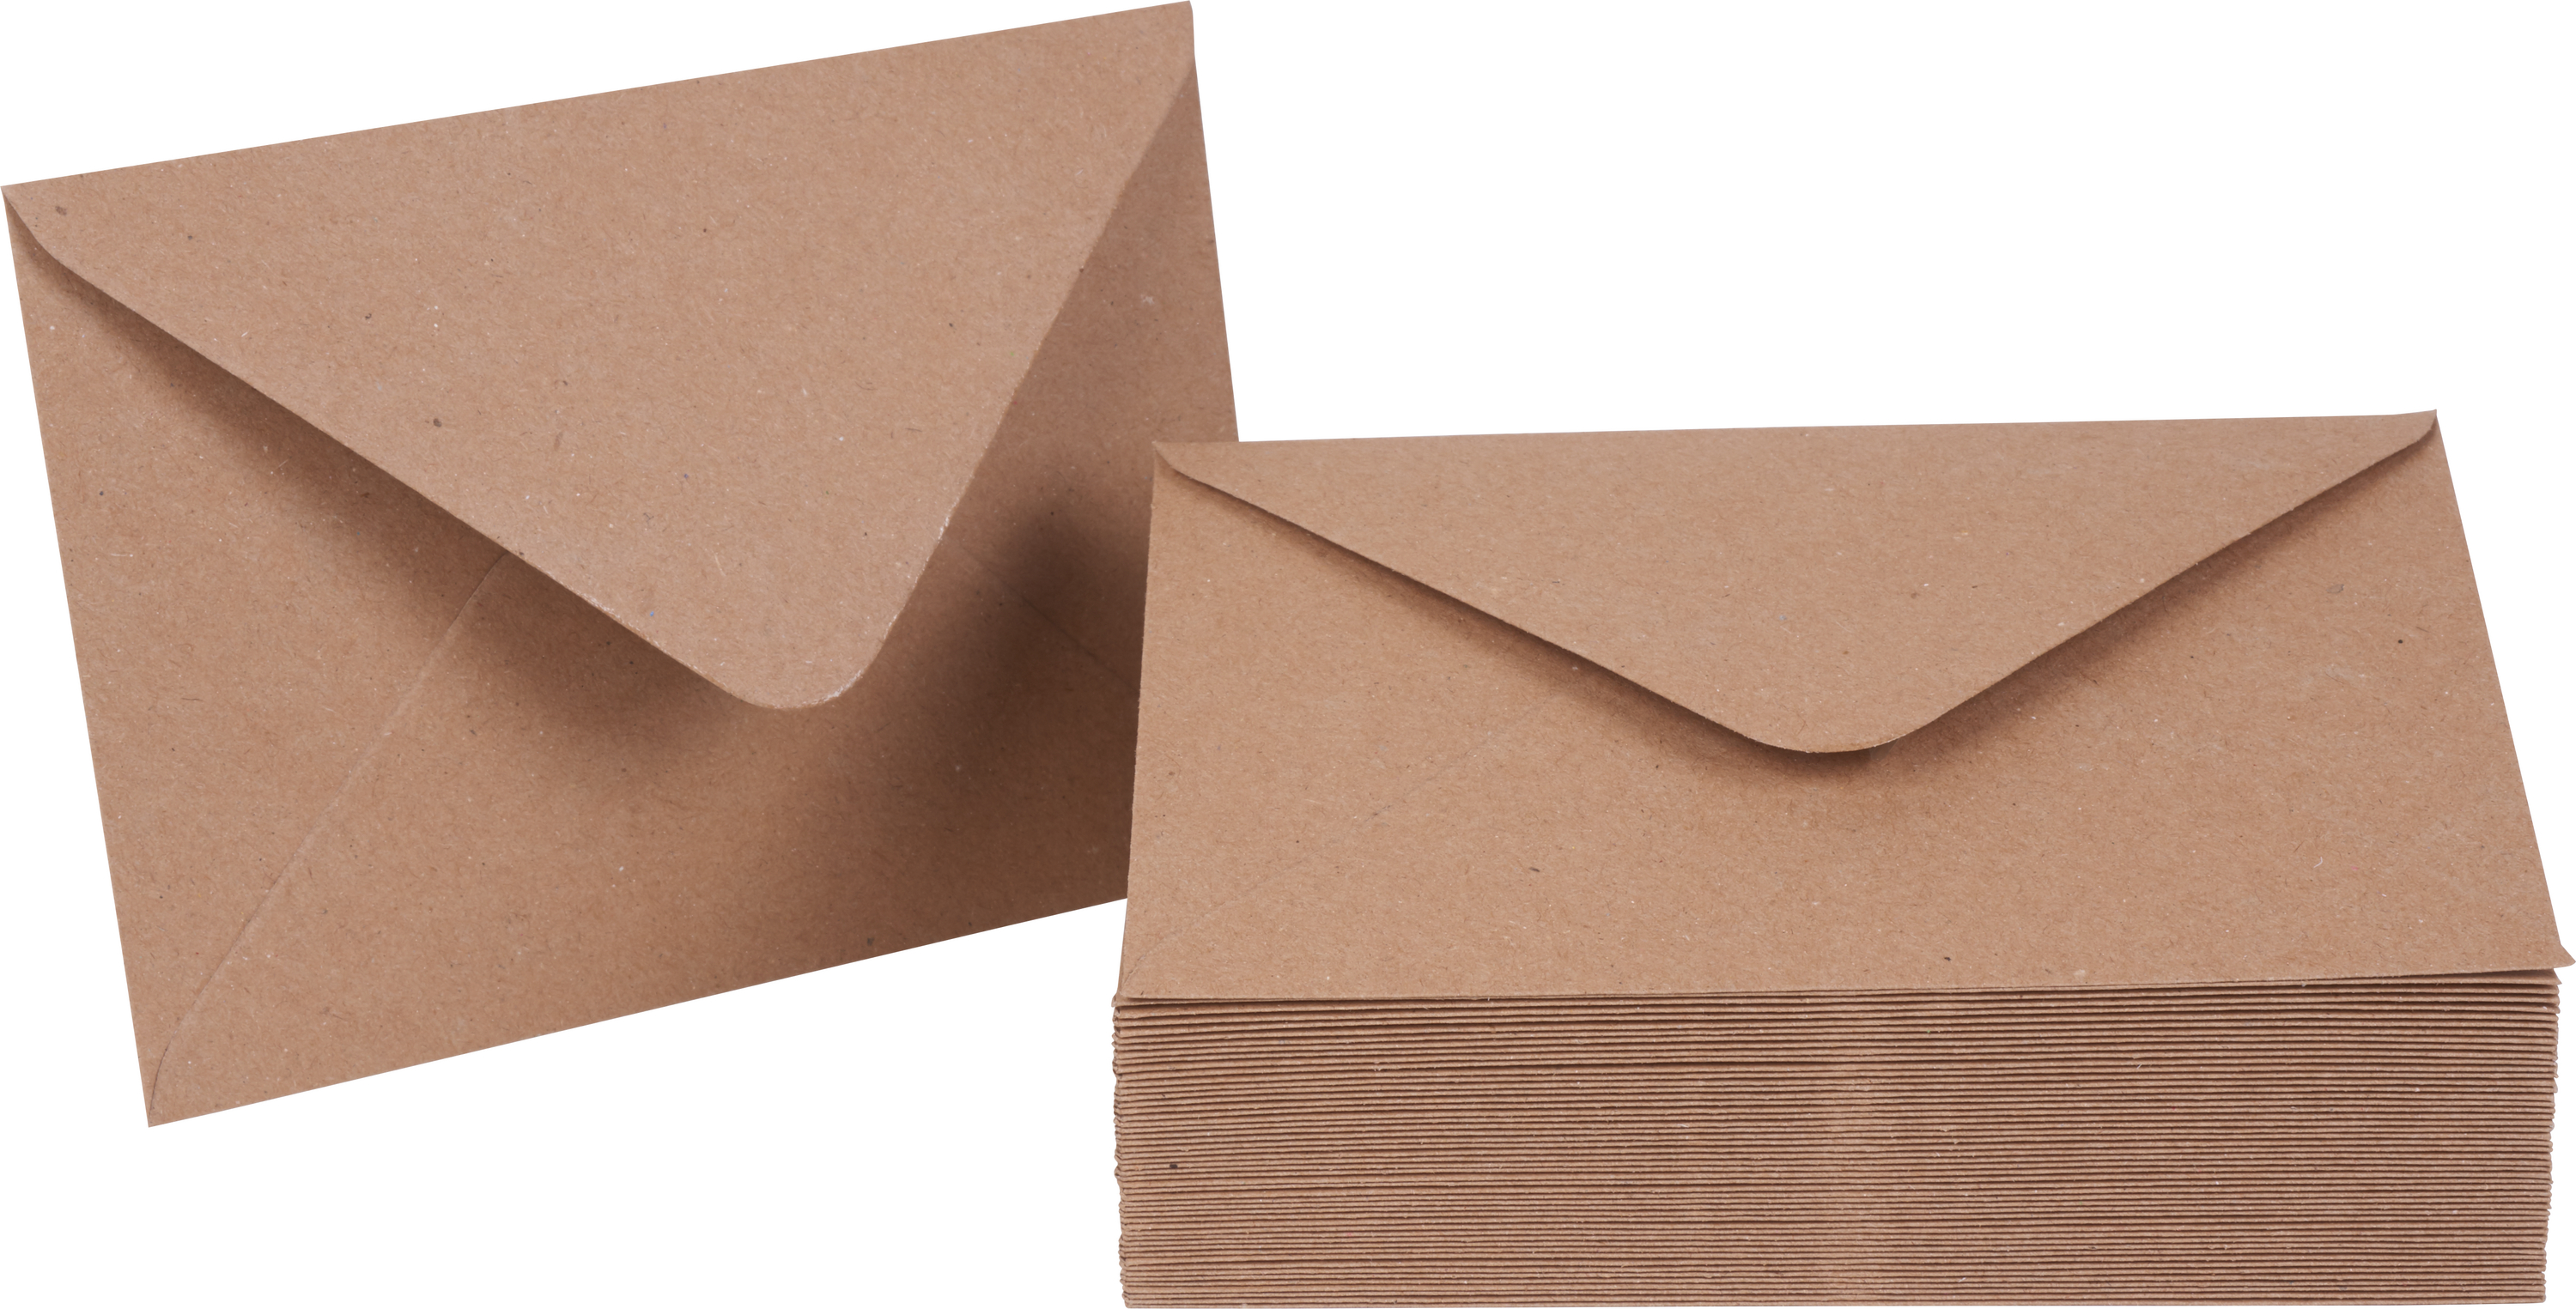 Acheter des Enveloppes en Papier Kraft